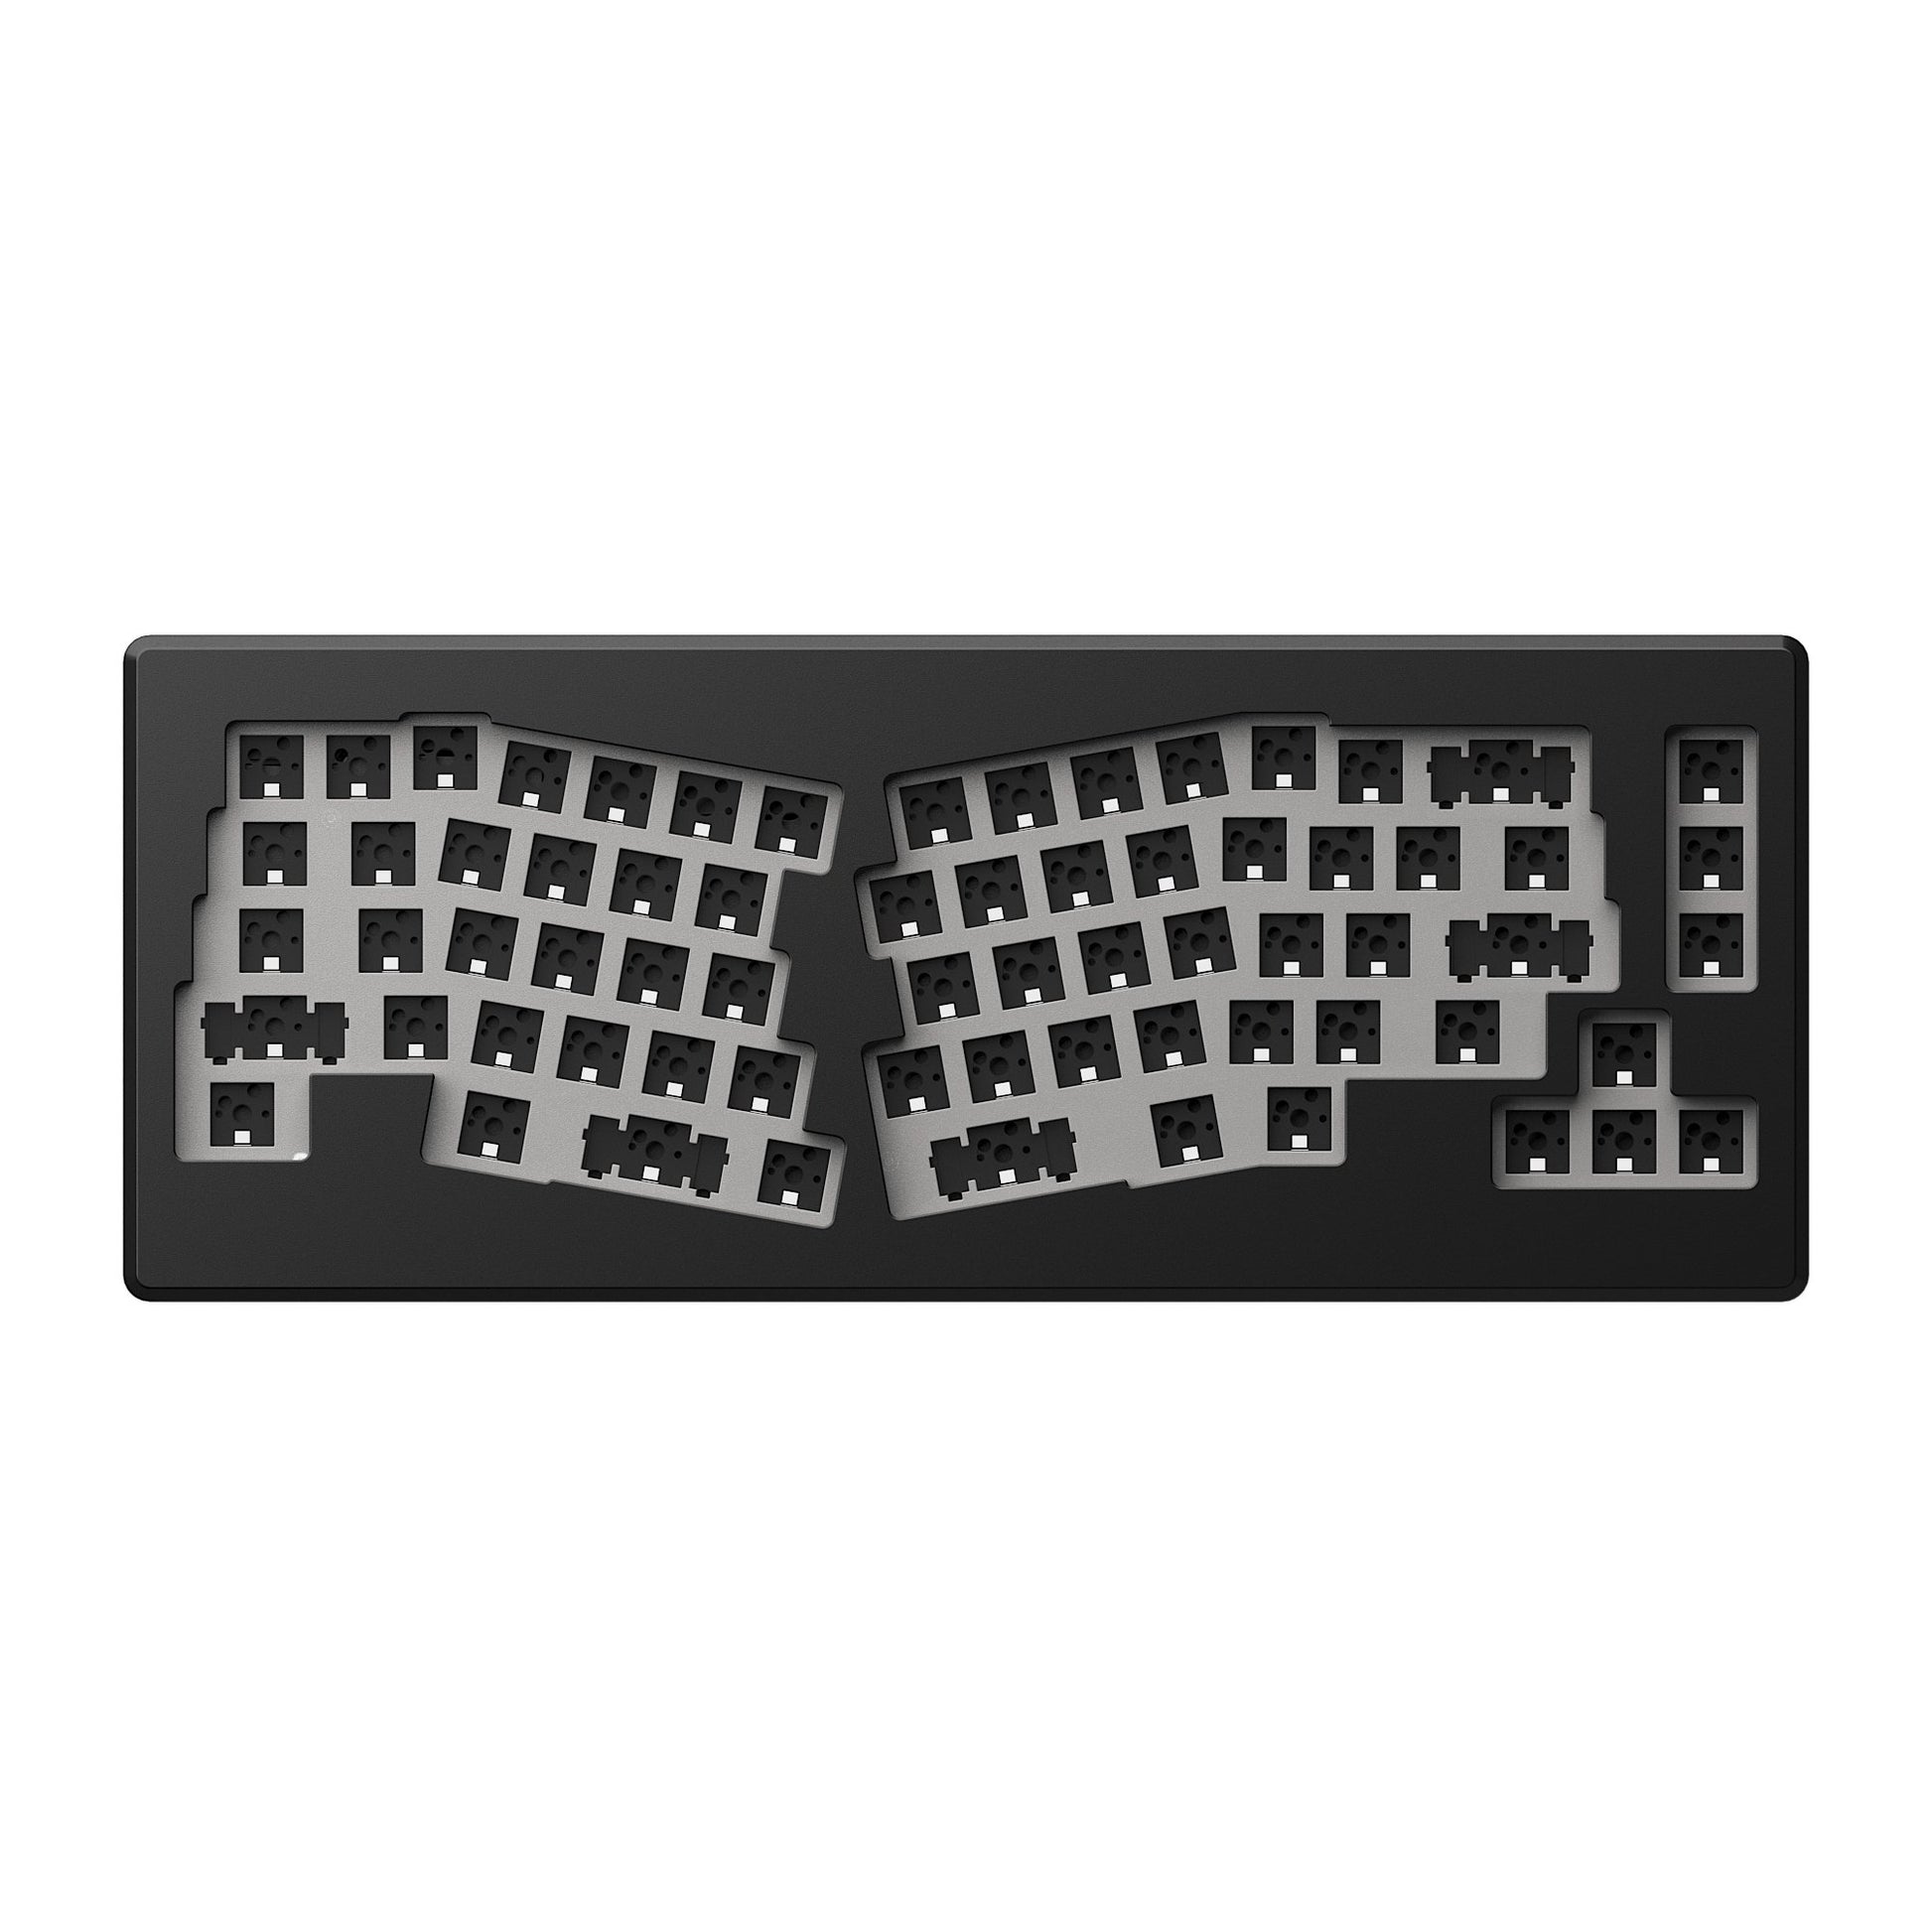 Monsgeek M6 Wireless Mechanical Aluminum Keyboard Barebone - Goblintechkeys